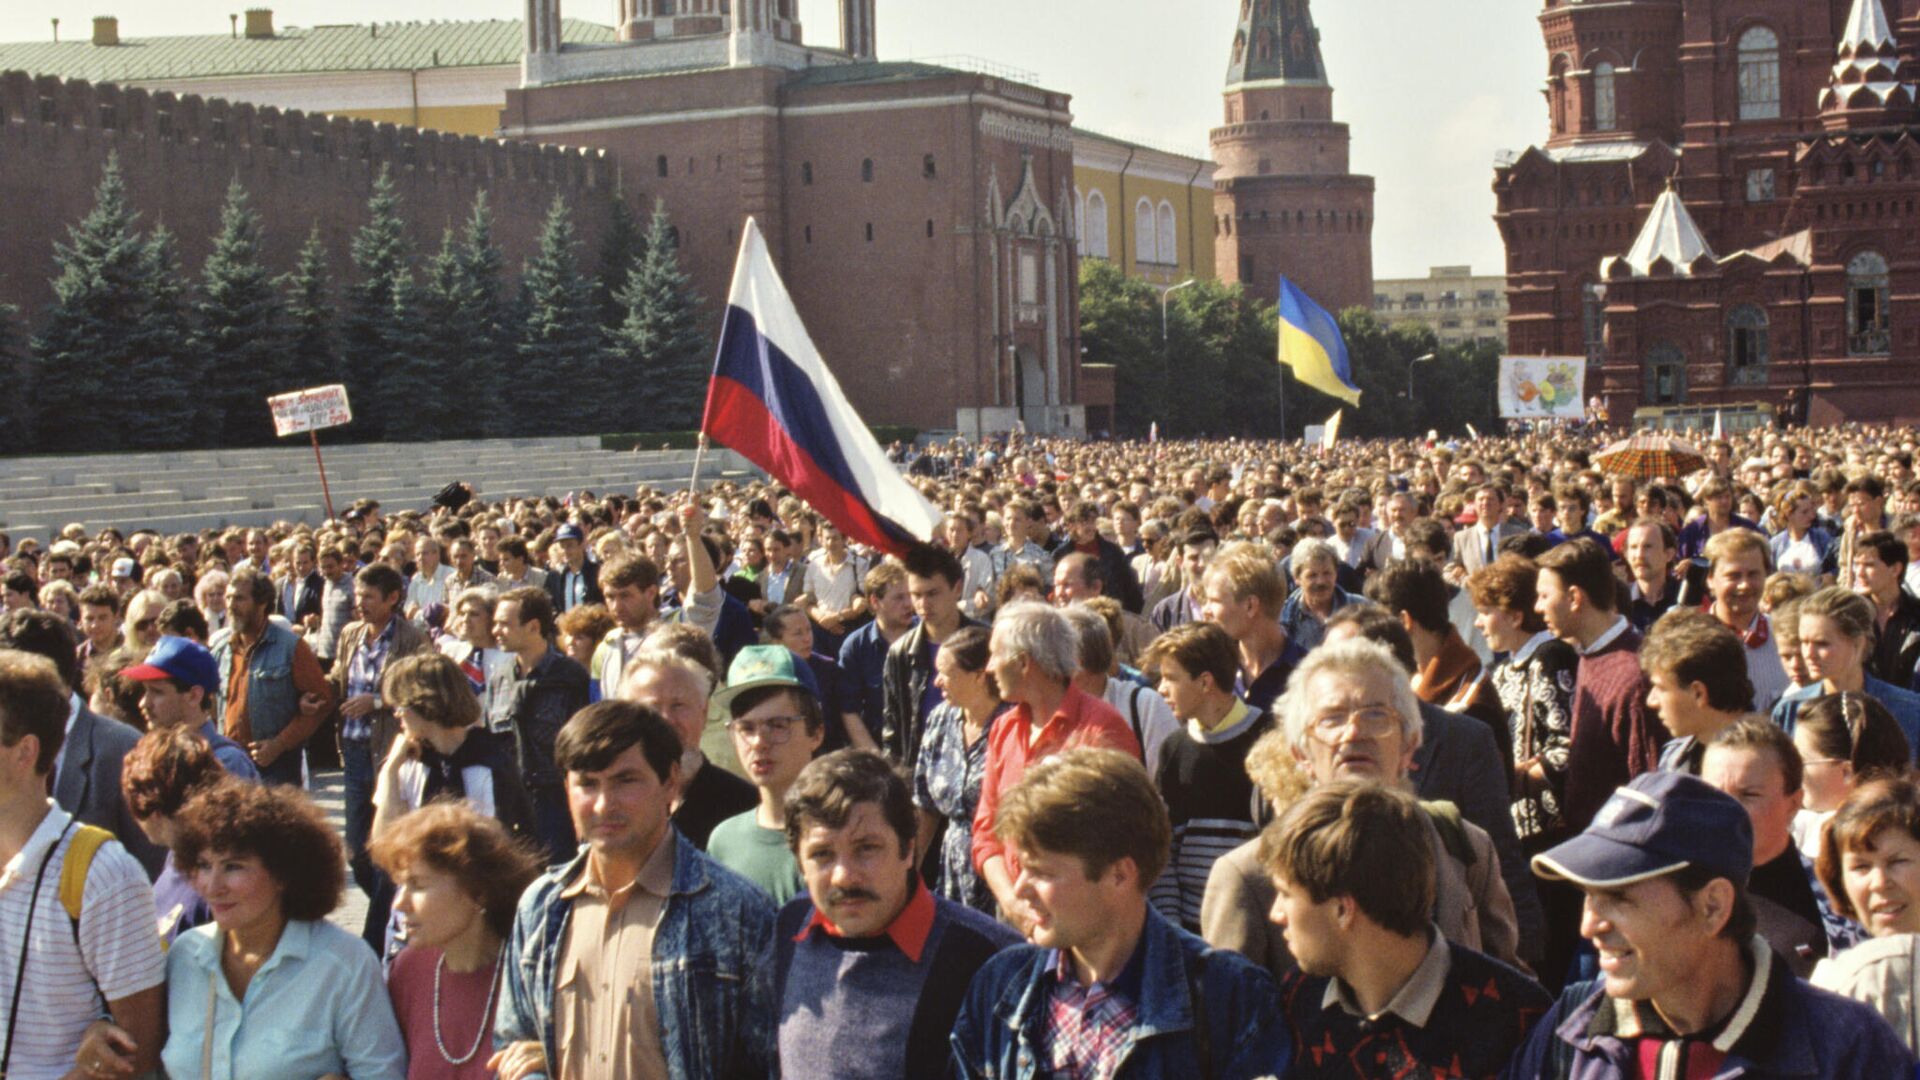 Evenimente de la Moscova în perioada 19-22 august 1991.
Moscoviții din Piața Roșie la 22 august 1991. - Sputnik Moldova, 1920, 27.12.2021